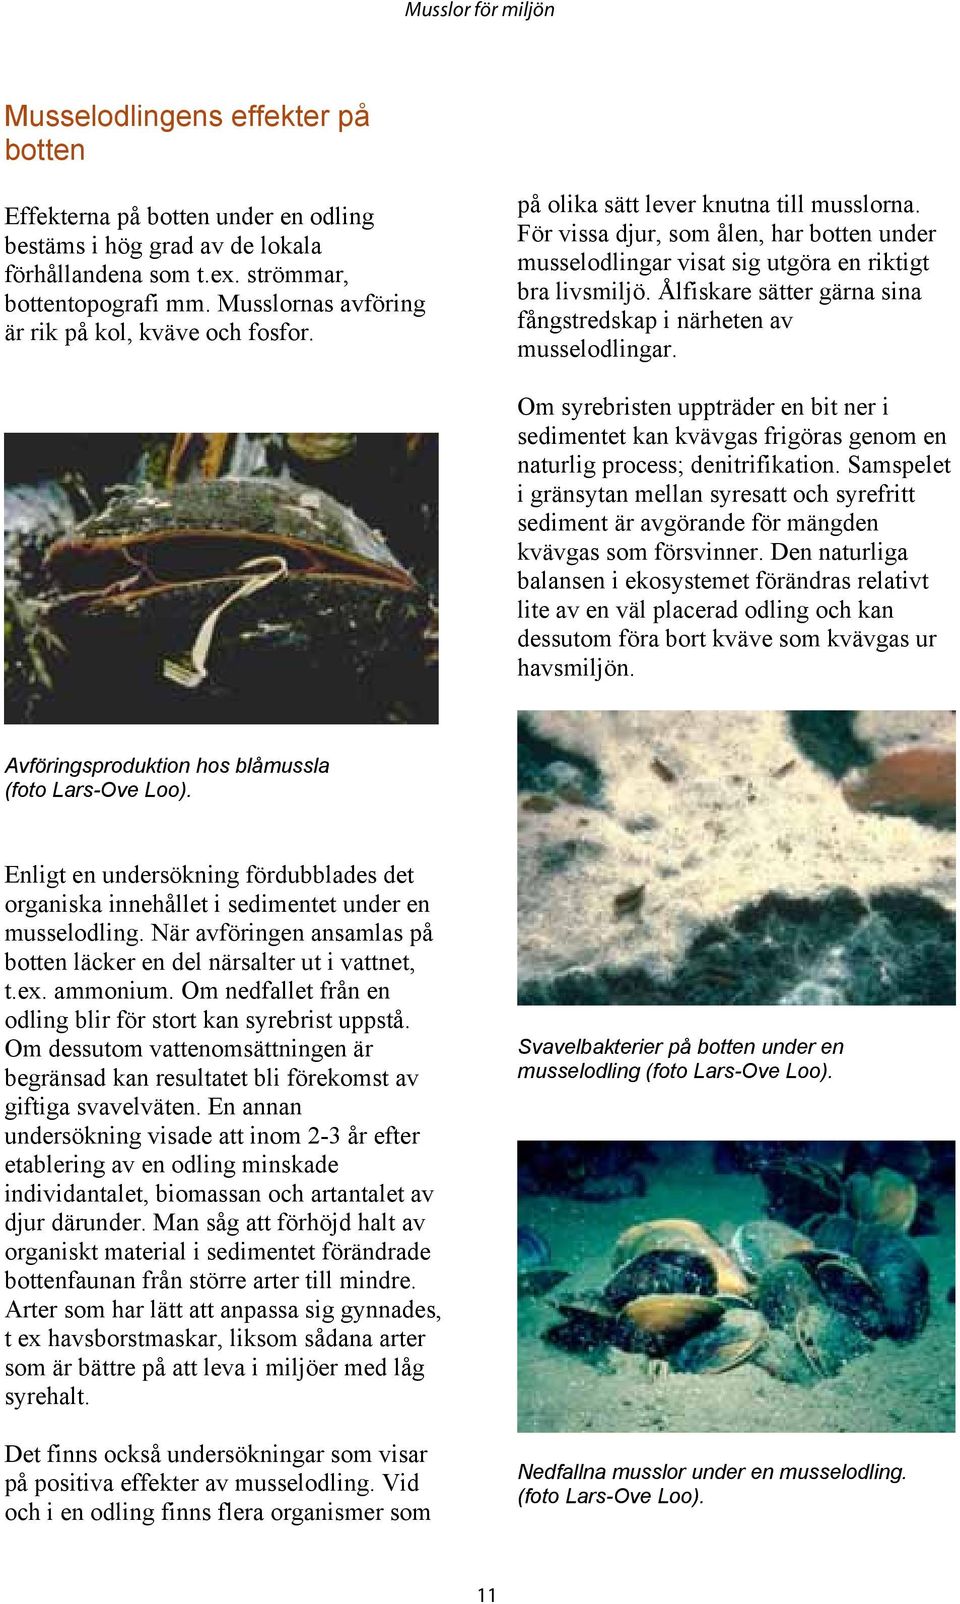 Ålfiskare sätter gärna sina fångstredskap i närheten av musselodlingar. Om syrebristen uppträder en bit ner i sedimentet kan kvävgas frigöras genom en naturlig process; denitrifikation.